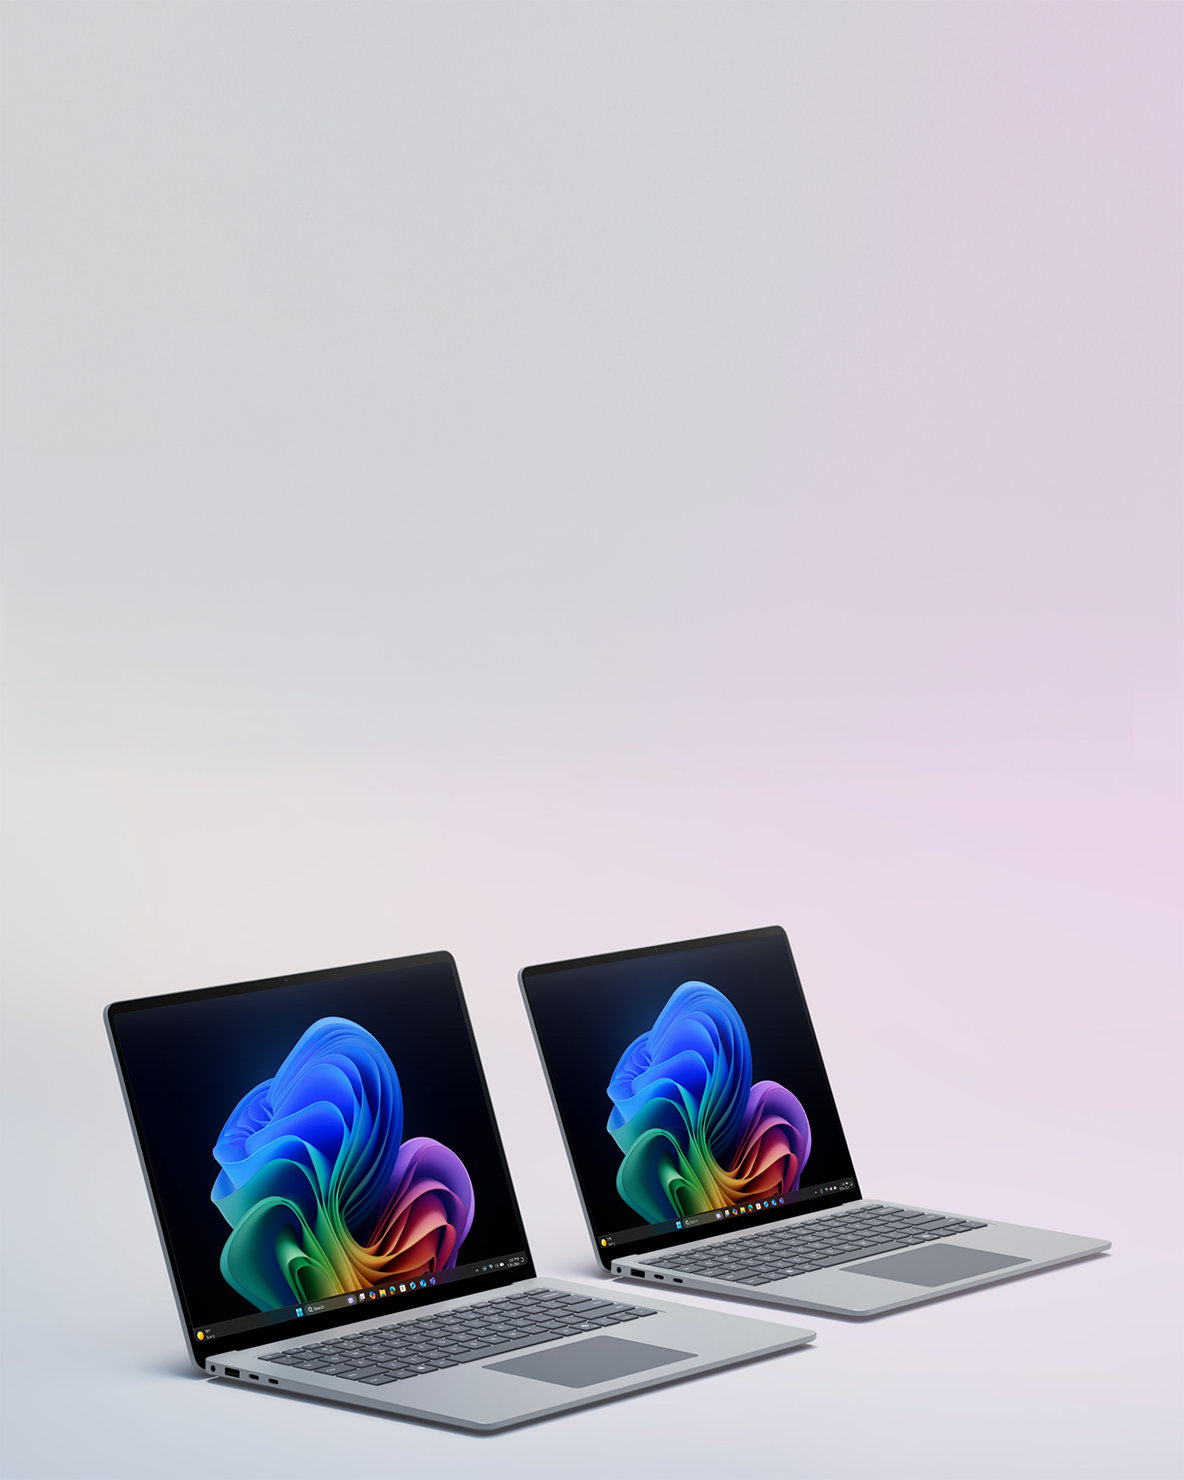 Uma imagem de dois dispositivos Surface Laptop lado a lado